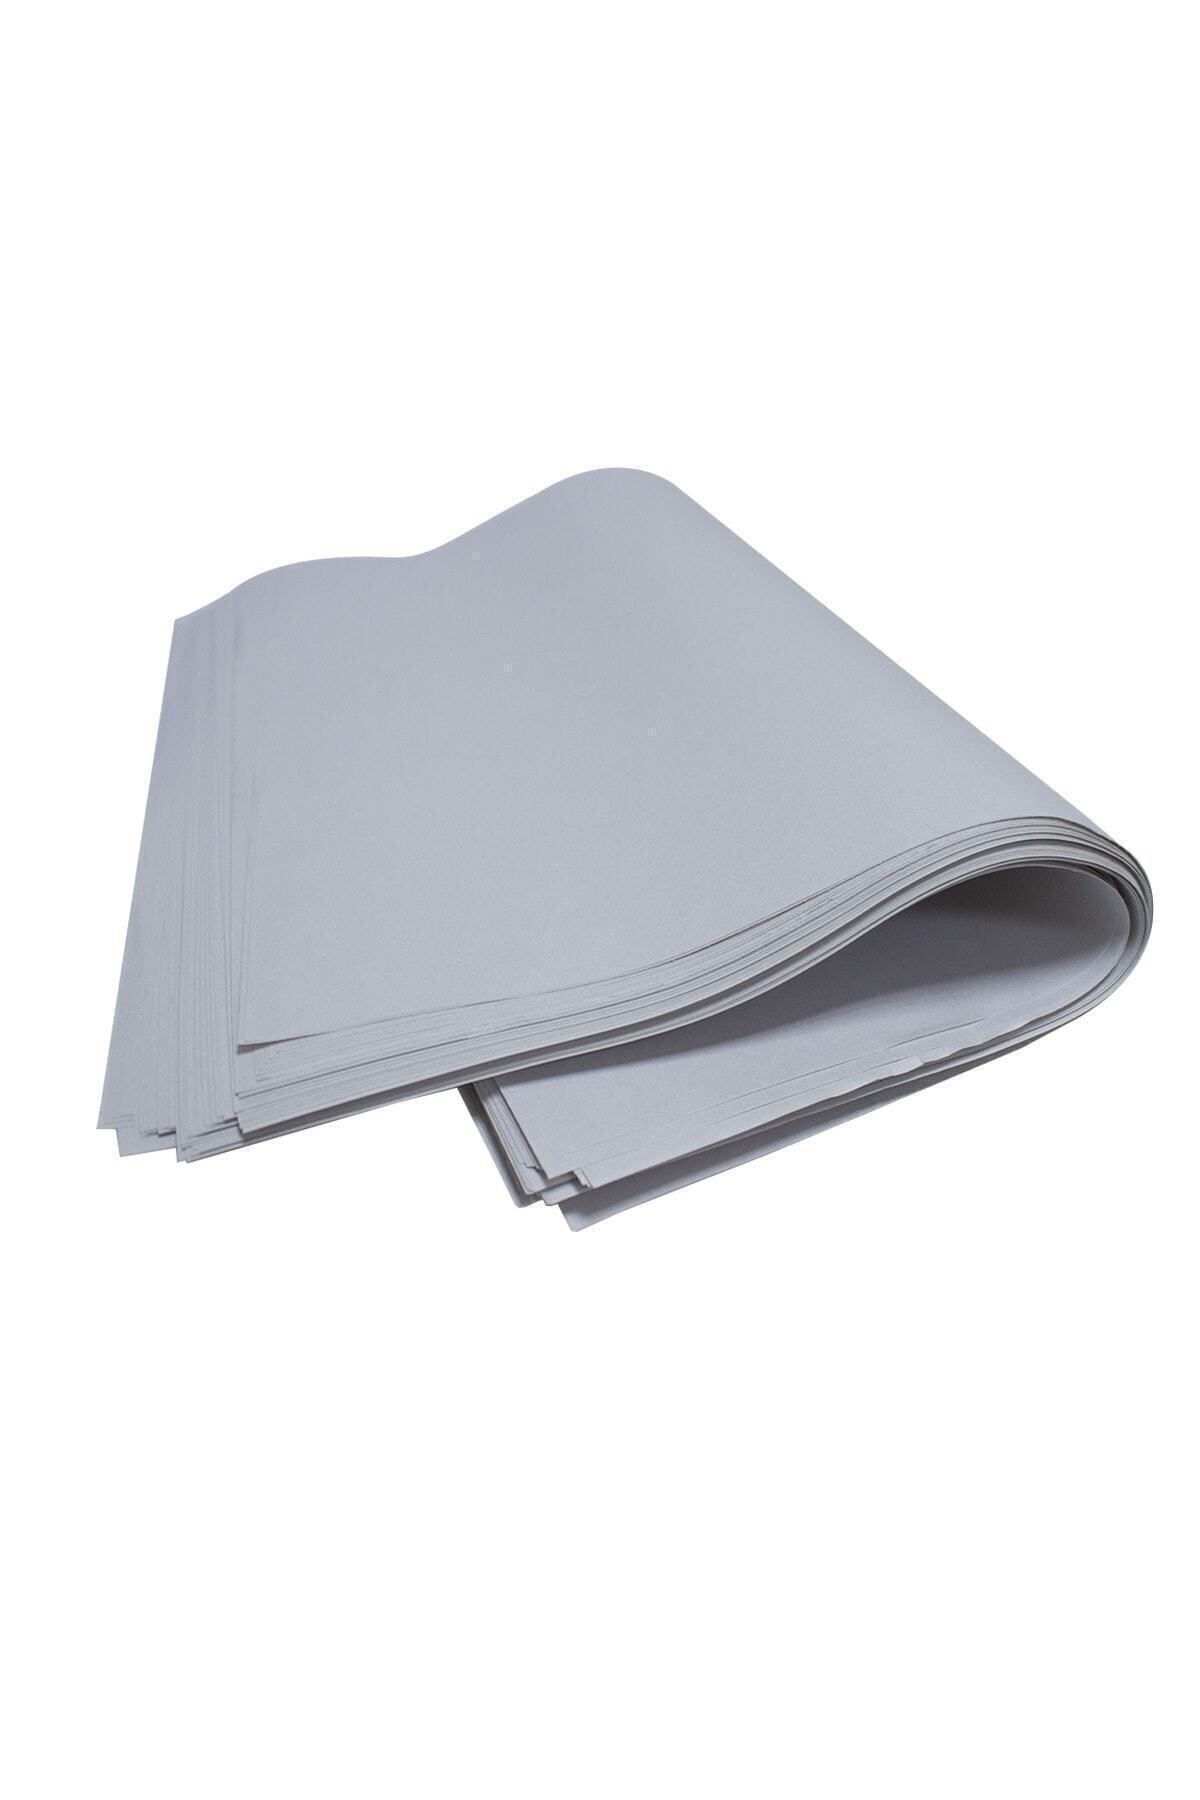 Hakhan Ürün Paketleme Eşya Sarma Koruma Beyaz Ambalaj Kağıdı Orta Boy 30x40 Cm 1kg 165 Adet